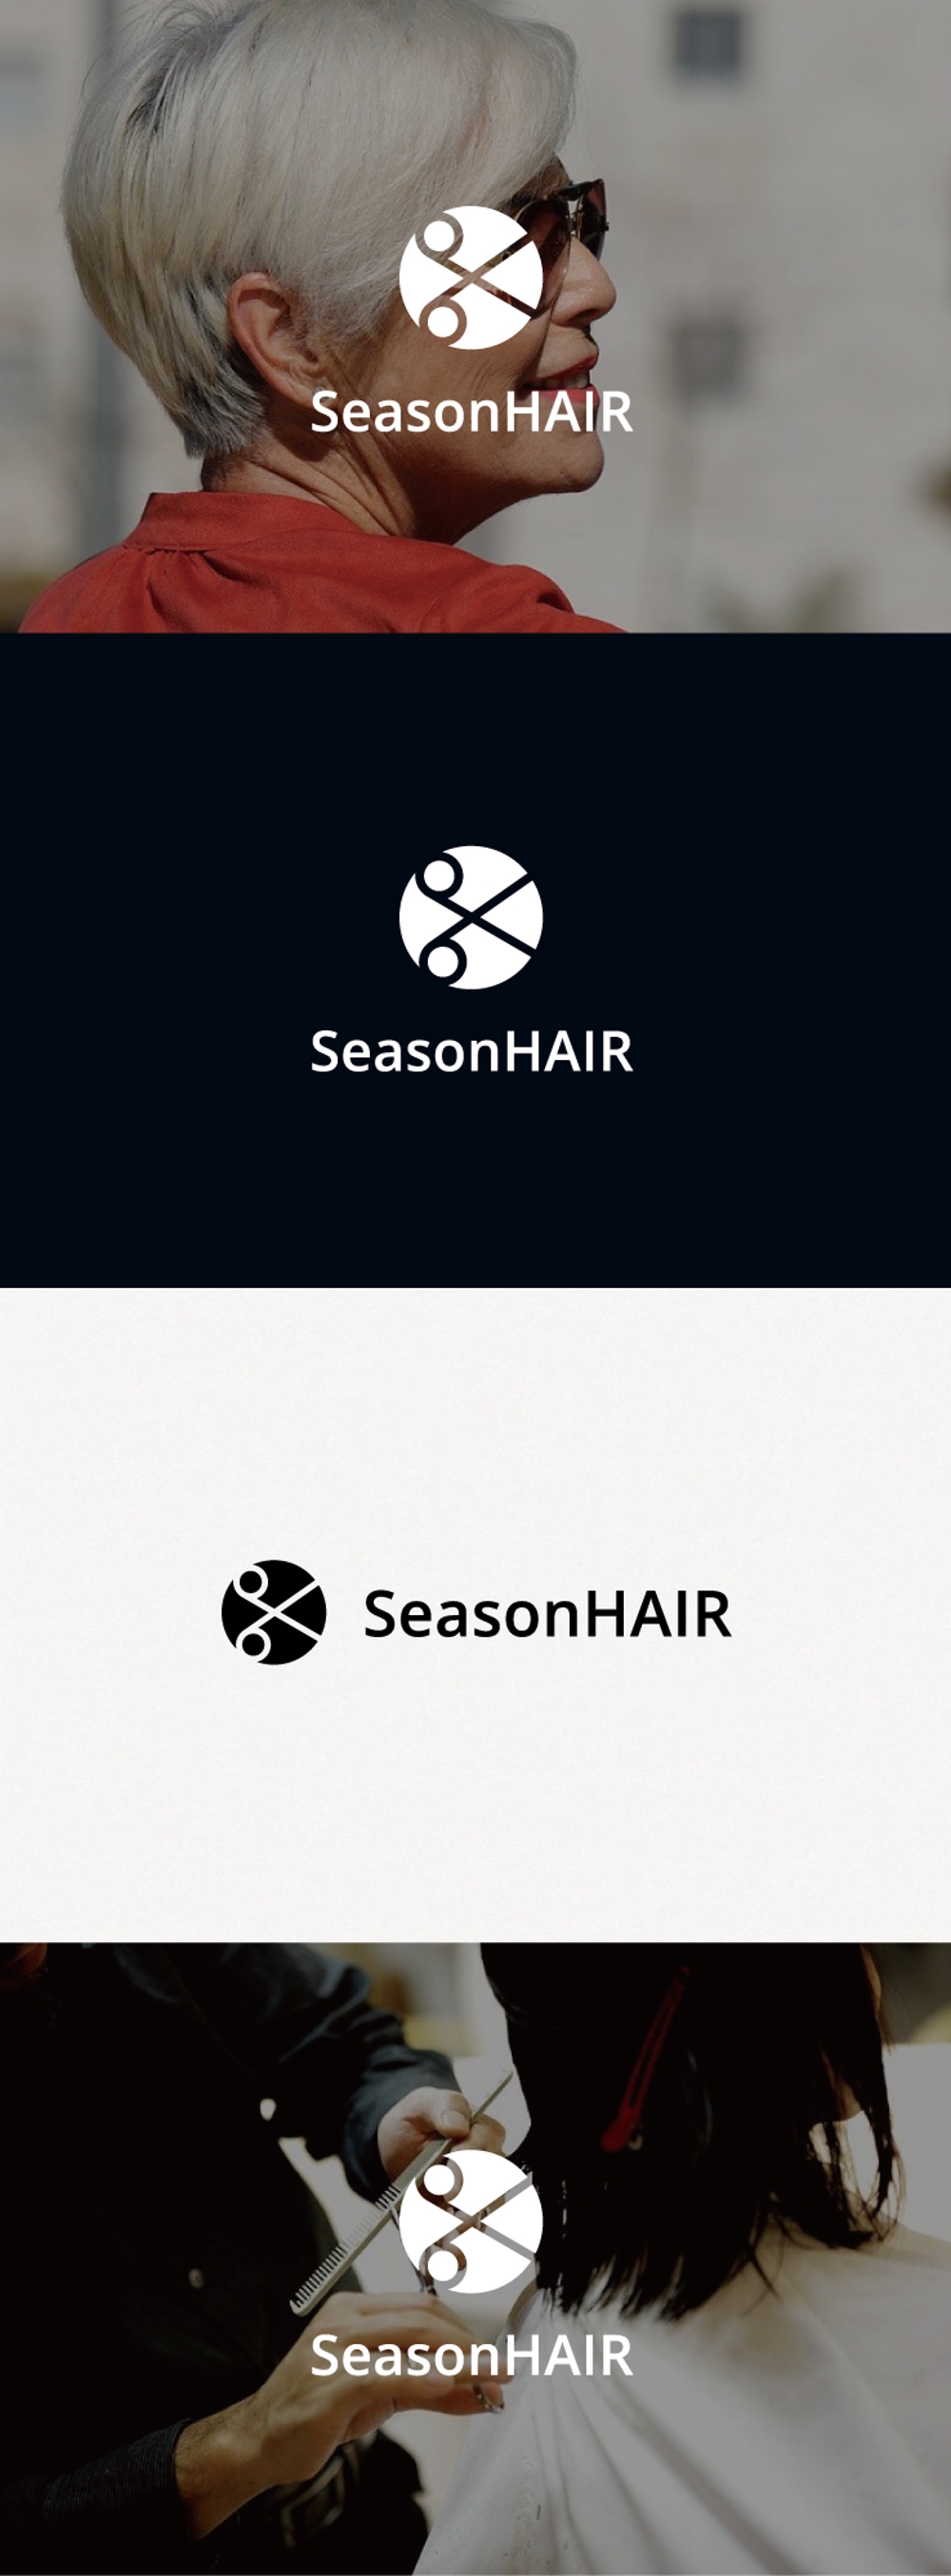 美容サービス「SeasonHAIR」のロゴマーク